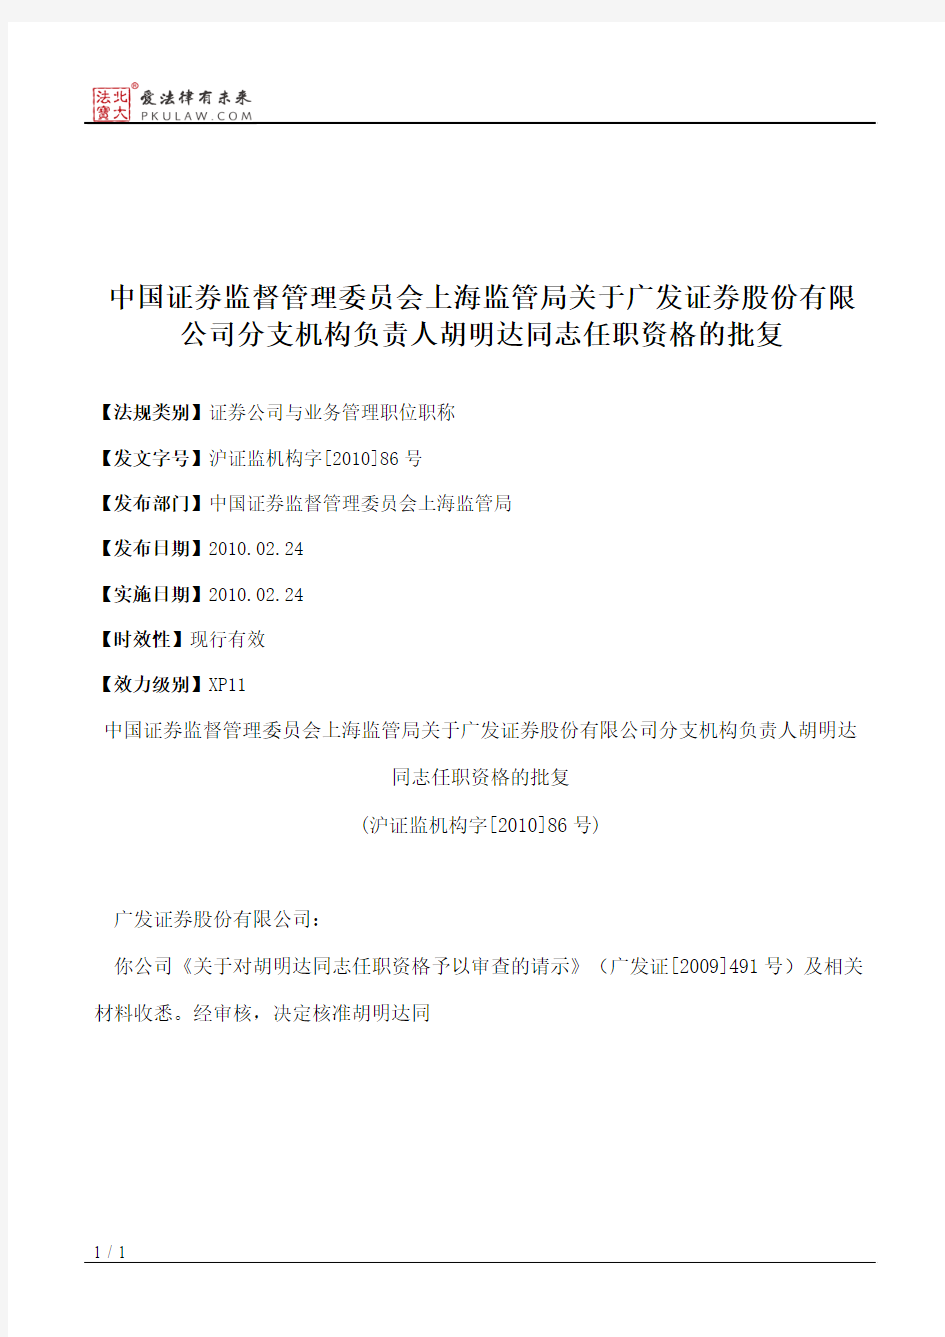 中国证券监督管理委员会上海监管局关于广发证券股份有限公司分支